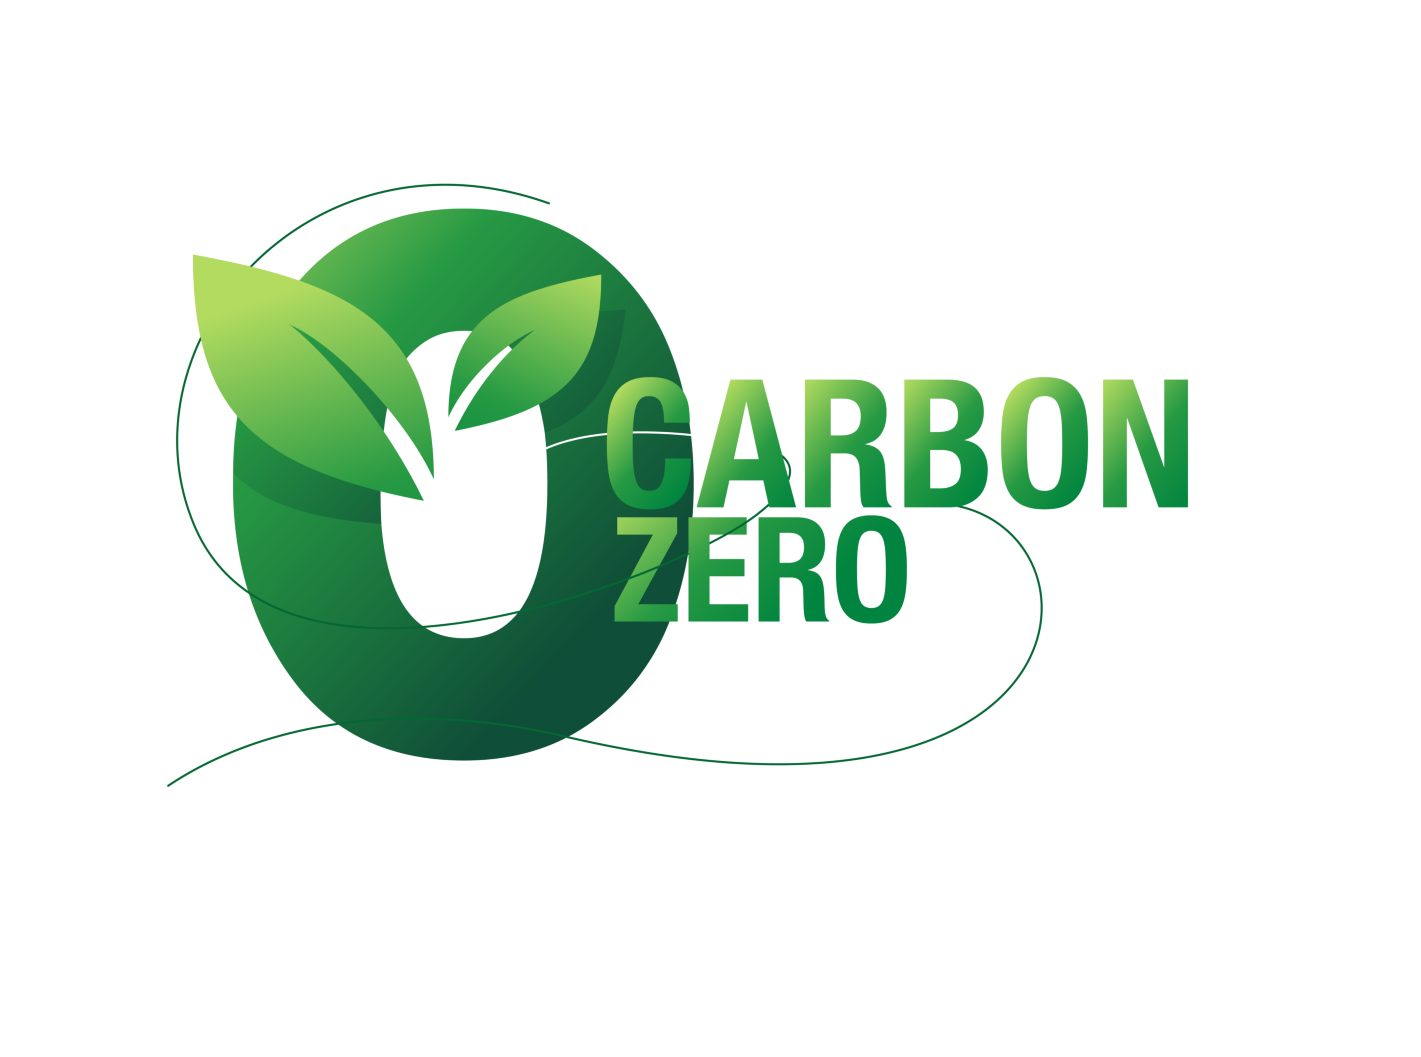 Baustoffe der Zukunft erfüllen CARBON ZERO - Fliesen schon heute! Wir von Fliesen Häuber zeigen Verantwortung für Nachhaltigkeit und arbeiten nur mit europäische Fliesen Herstellern zusammen, die CARBON ZERO erfüllen oder anstreben!